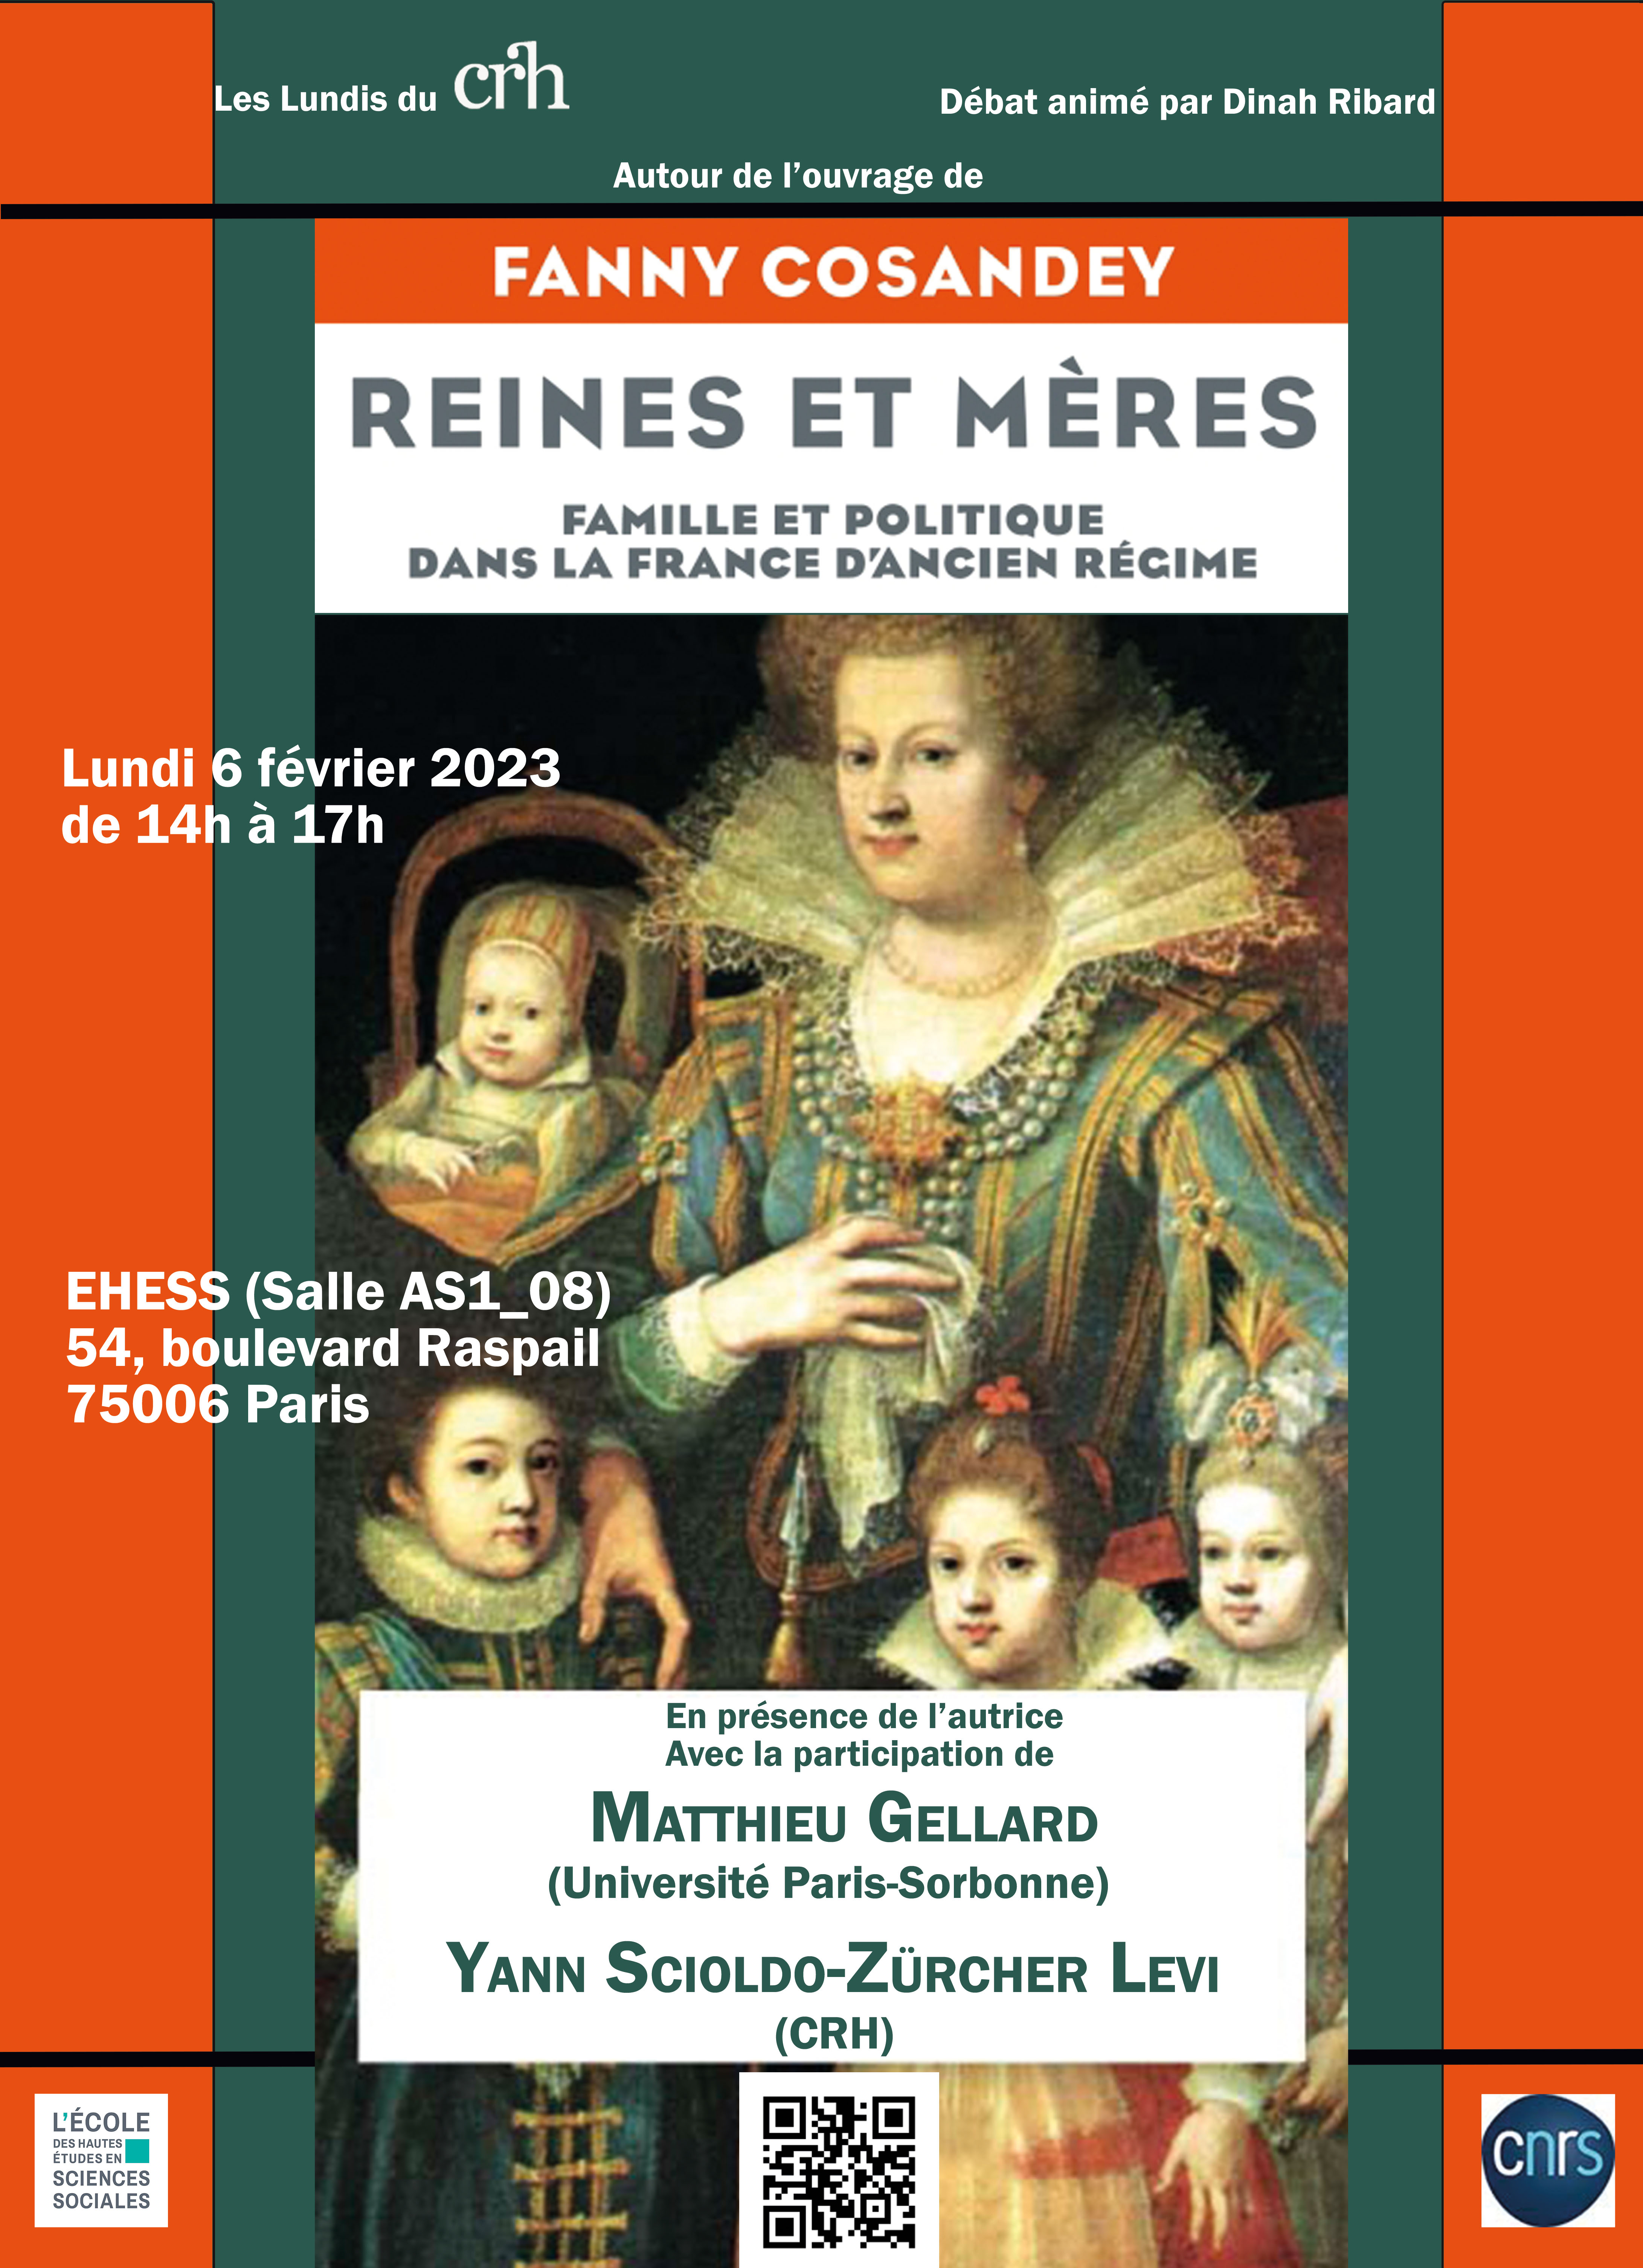 Autour de l'ouvrage de Fanny Cosandey, Reines et mères. Famille et politique dans la France d'Ancien Régime